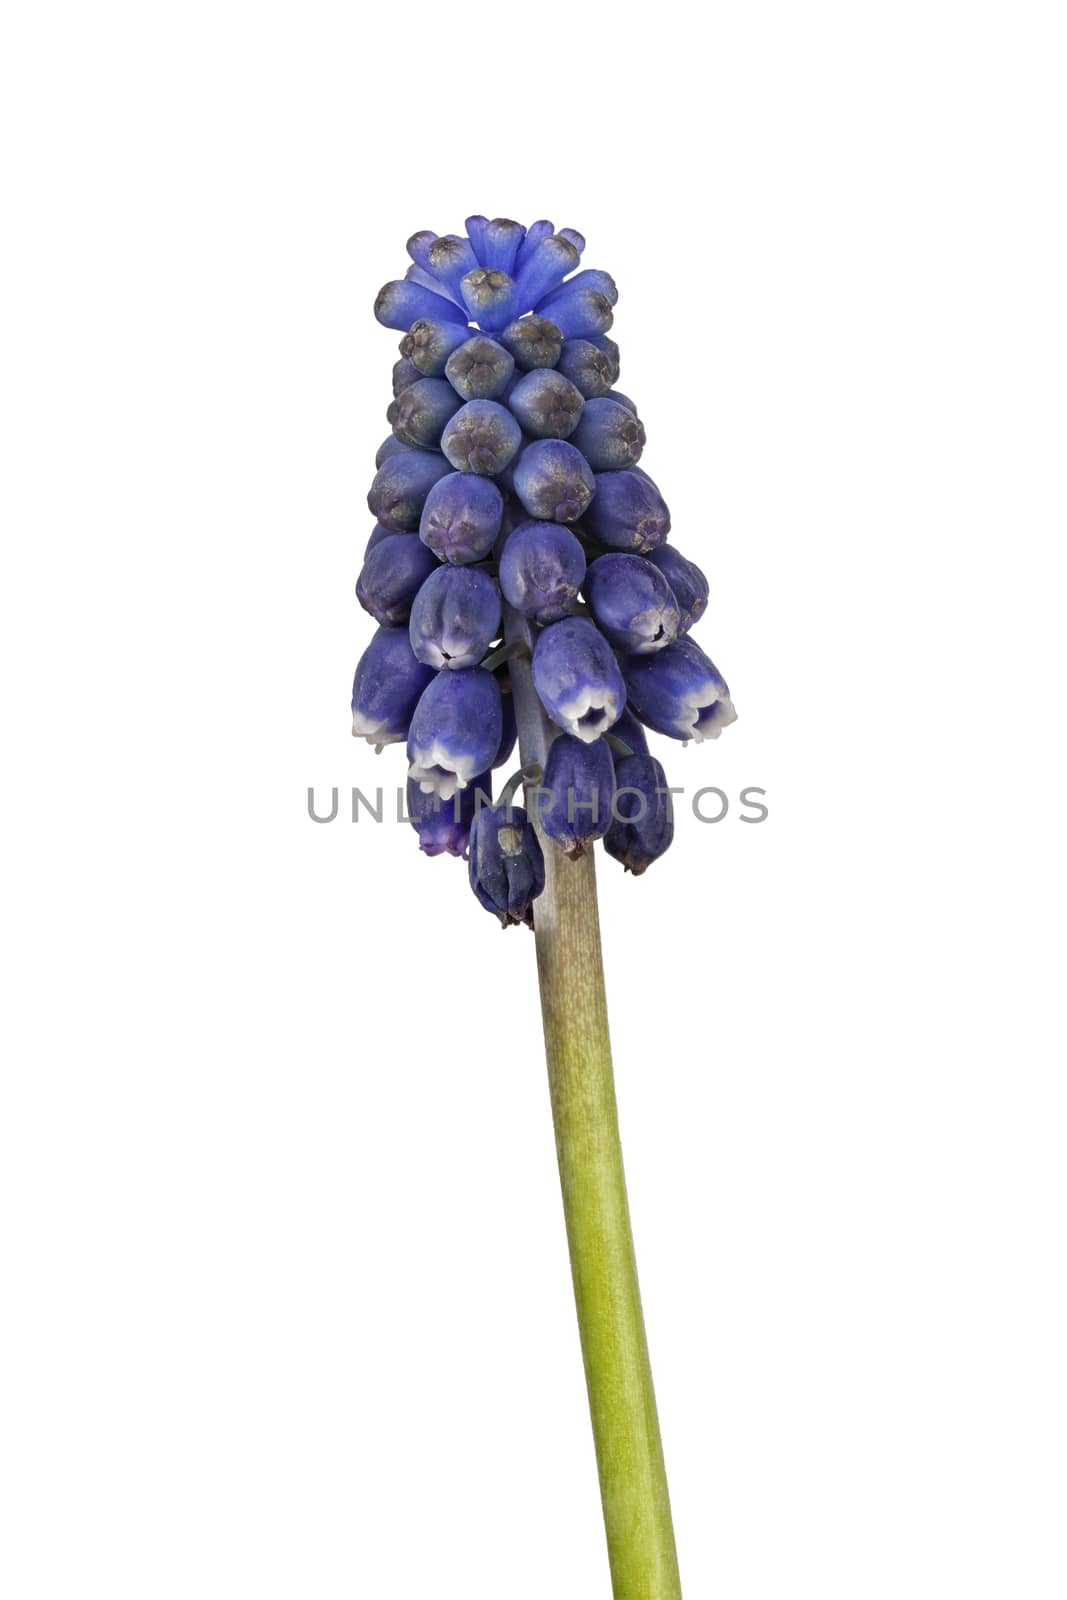 Blue grape hyacinth on a white background by neryx